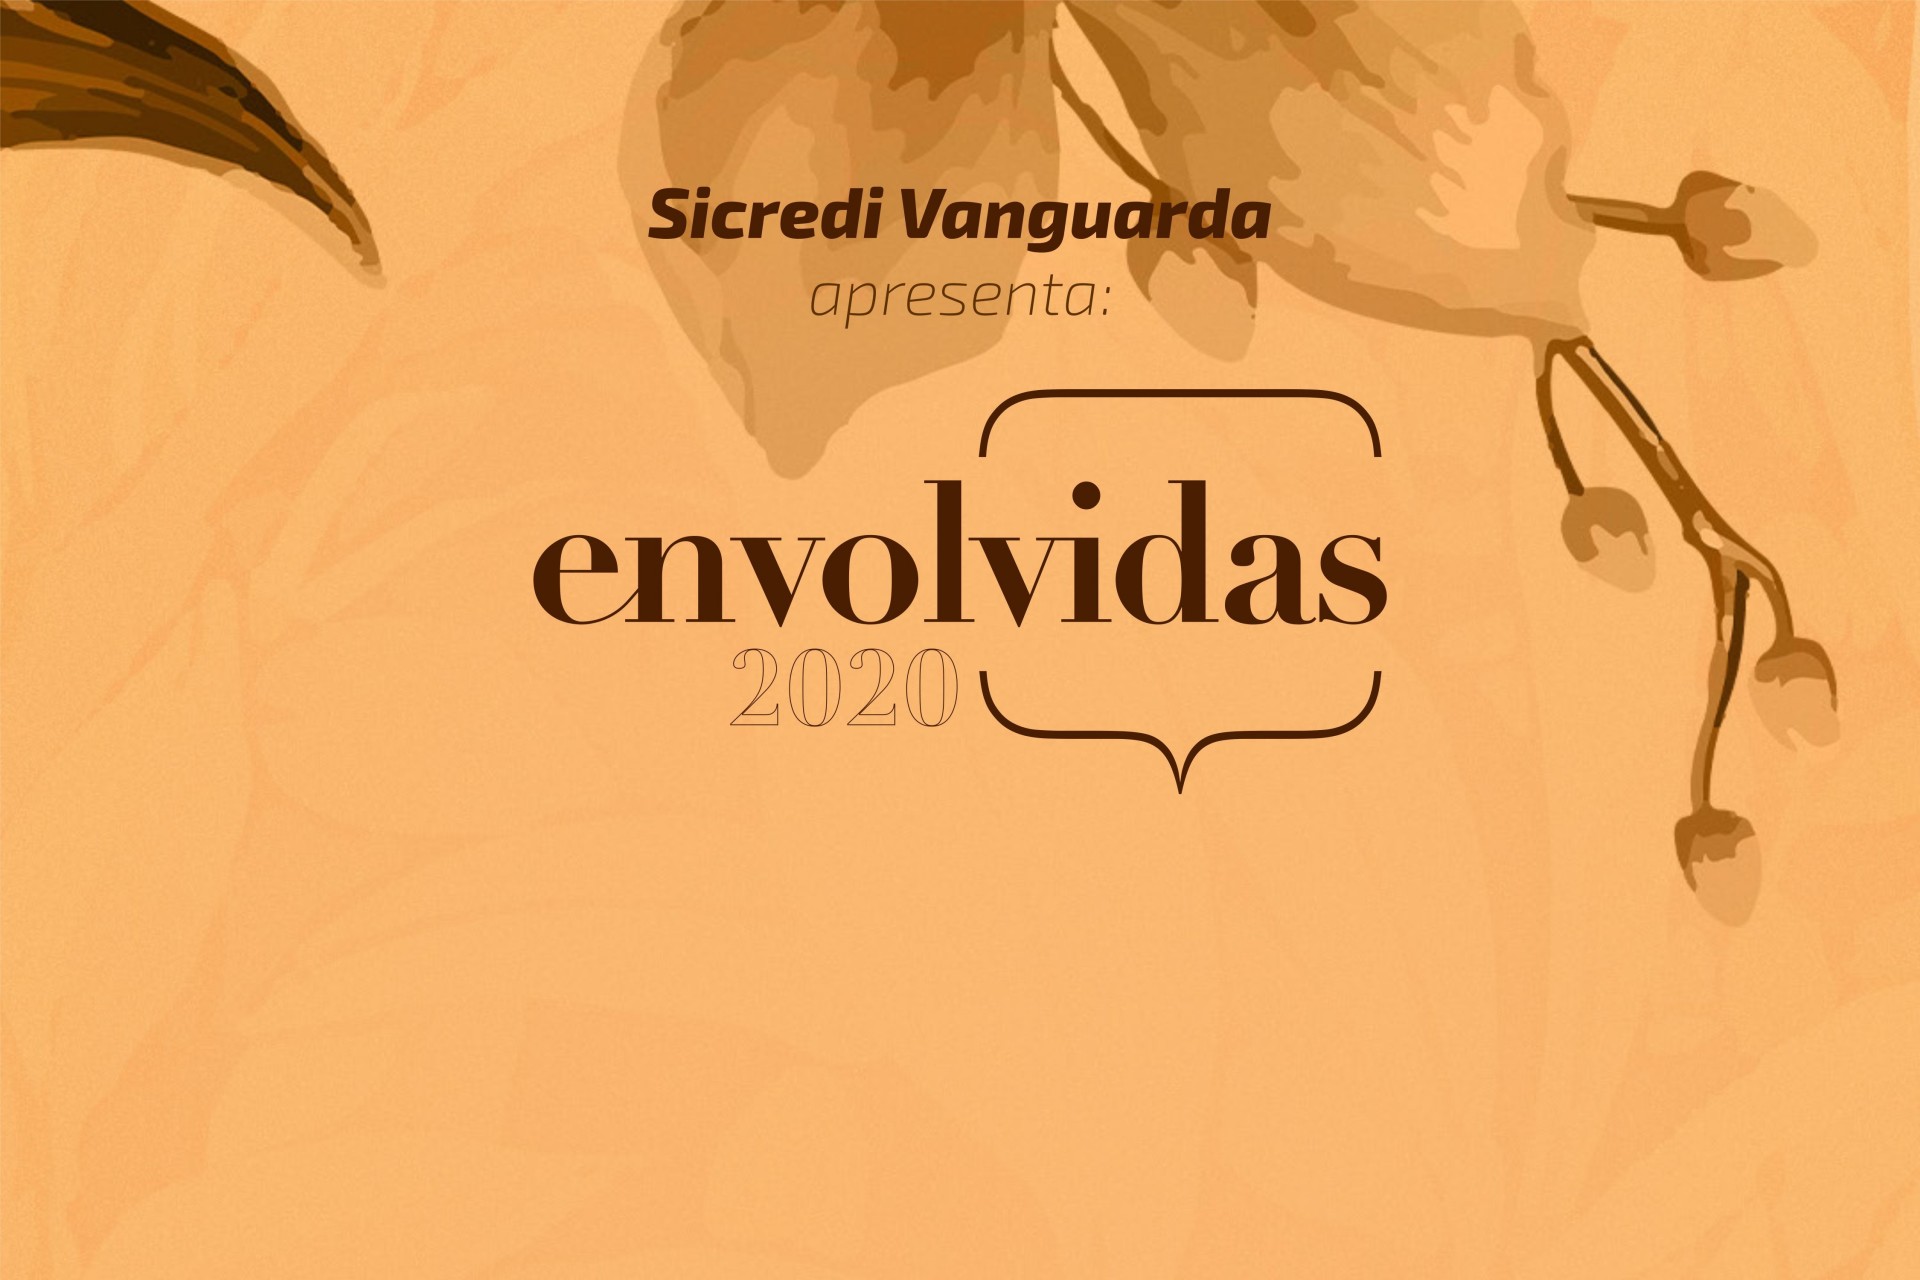 Sicredi Vanguarda realizará a segunda edição do EnvolVidas